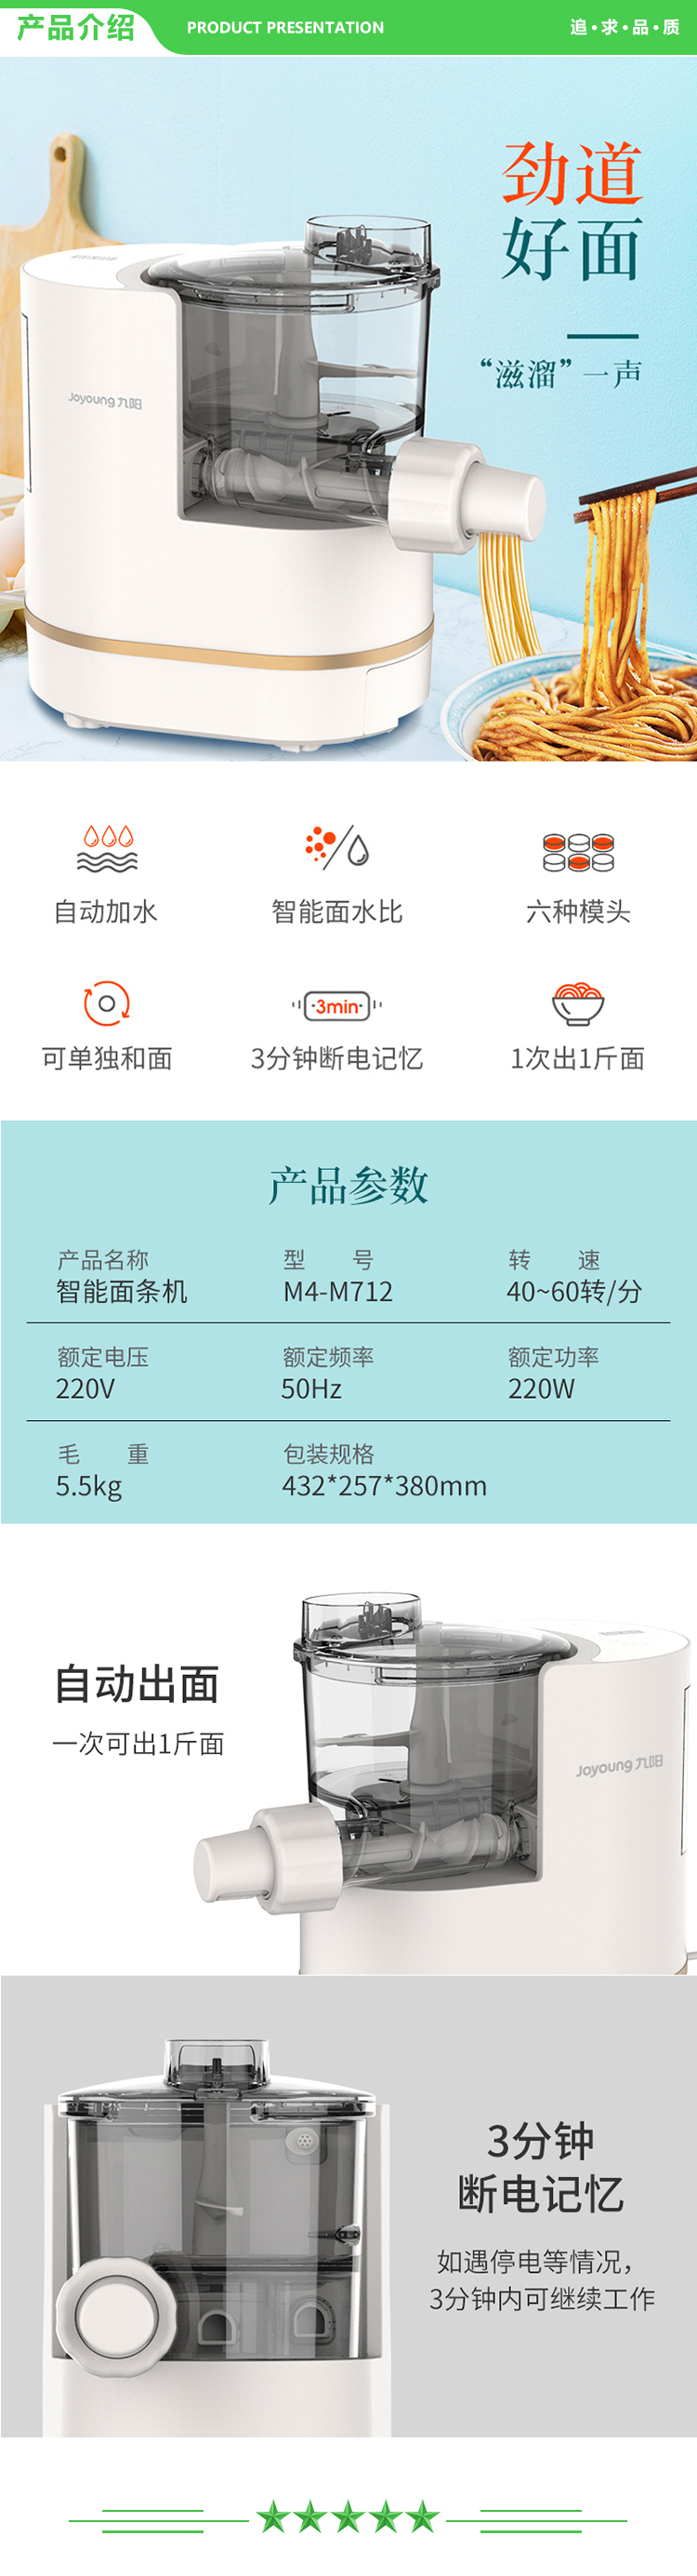 九阳 Joyoung M4-M712 面条机全自动智能加水多功能 家用压面机.jpg